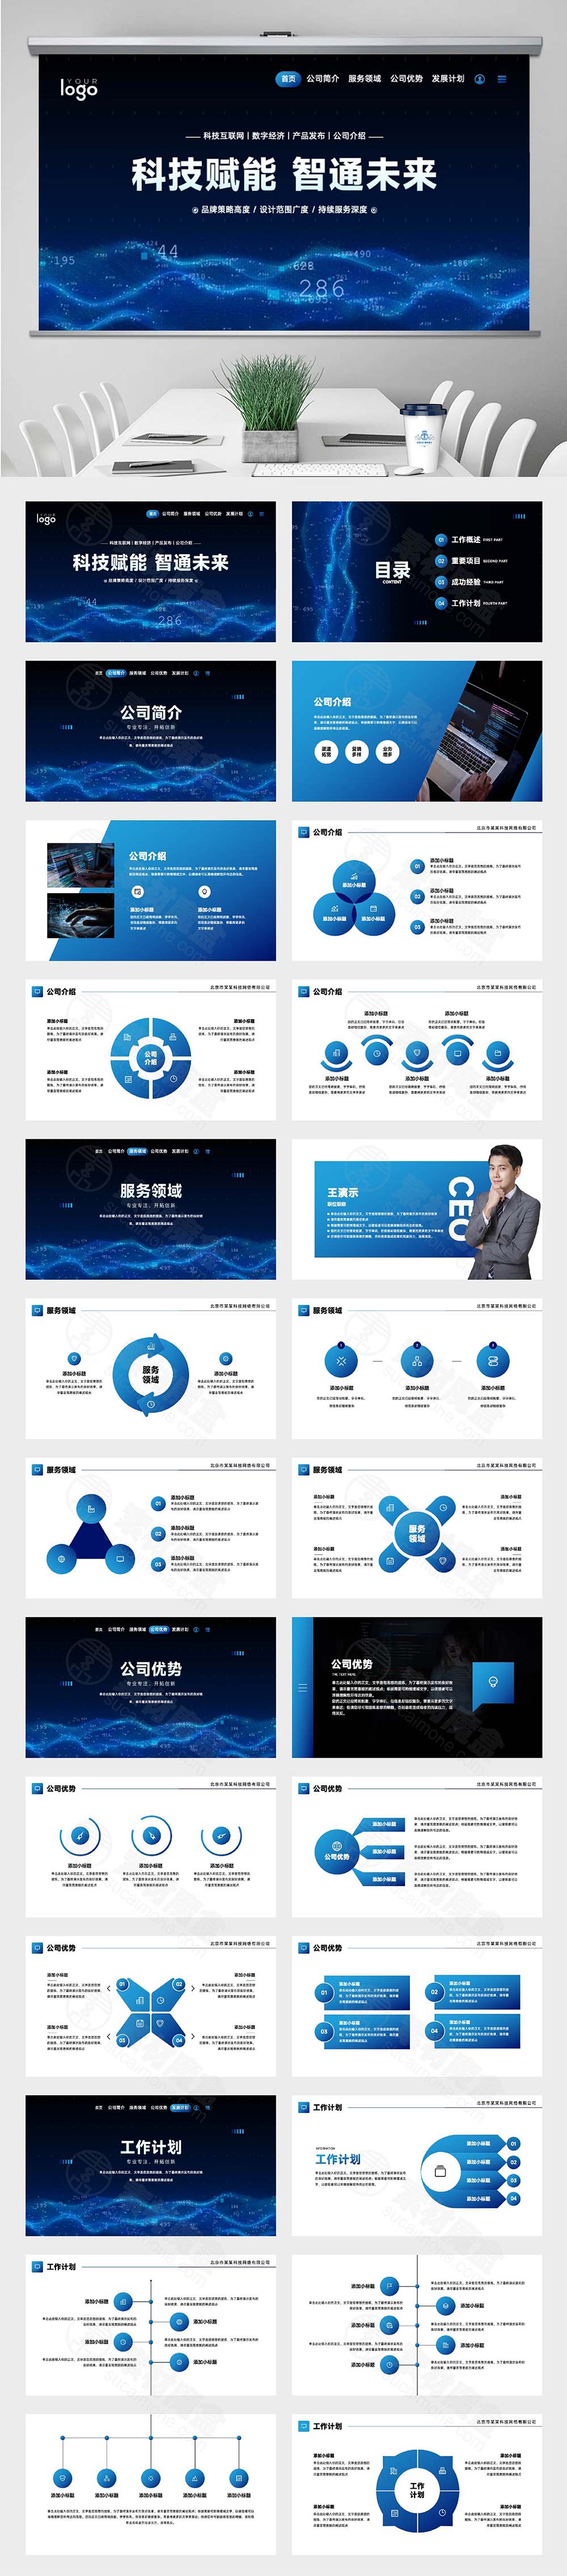 深蓝科技互联网公司介绍企业品牌产品发布会PPT模板